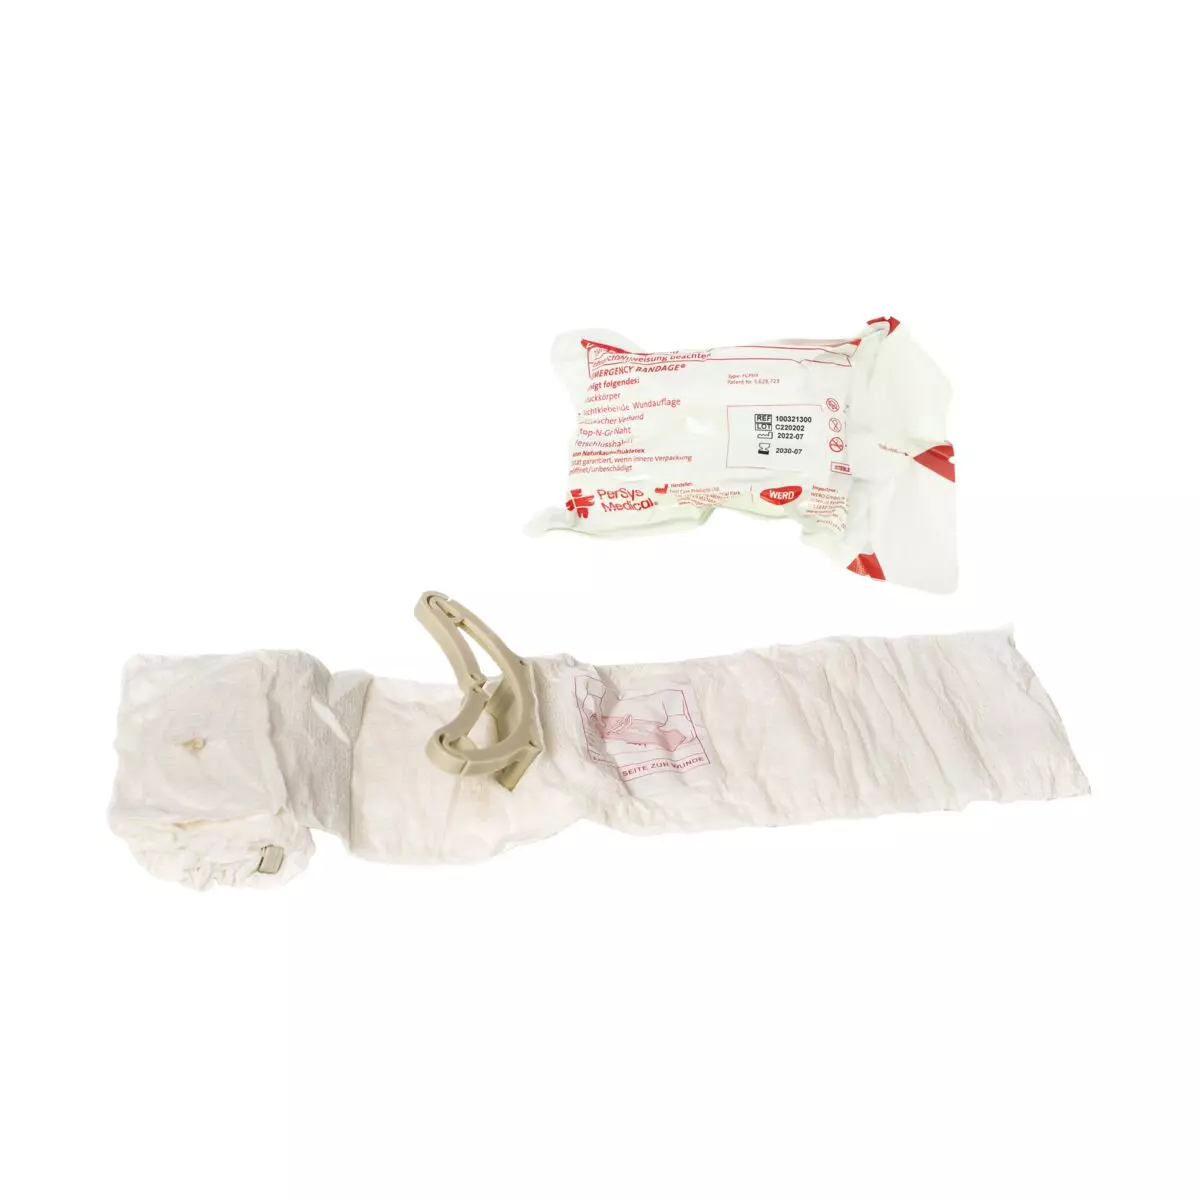 Die original Emergency Bandage® - Weiß, 10 cm